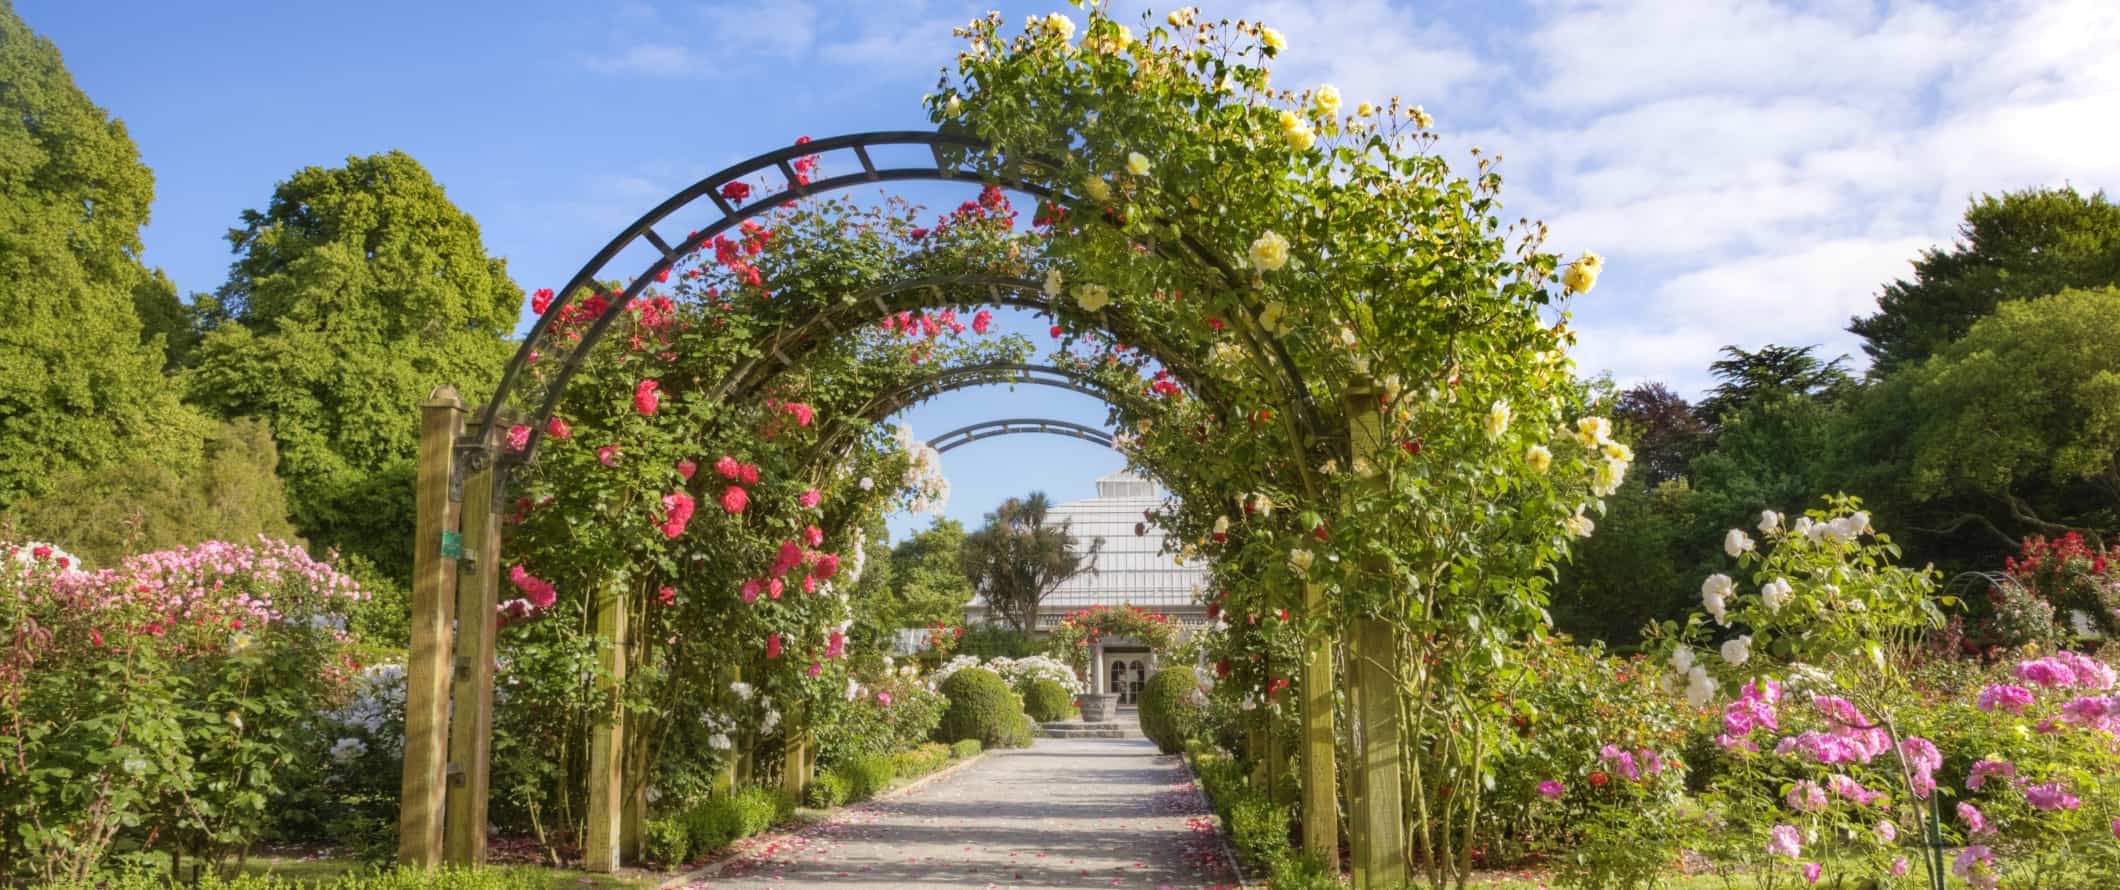 Um arco coberto de flores no Jardim Botânico de Christchurch, Nova Zelândia.